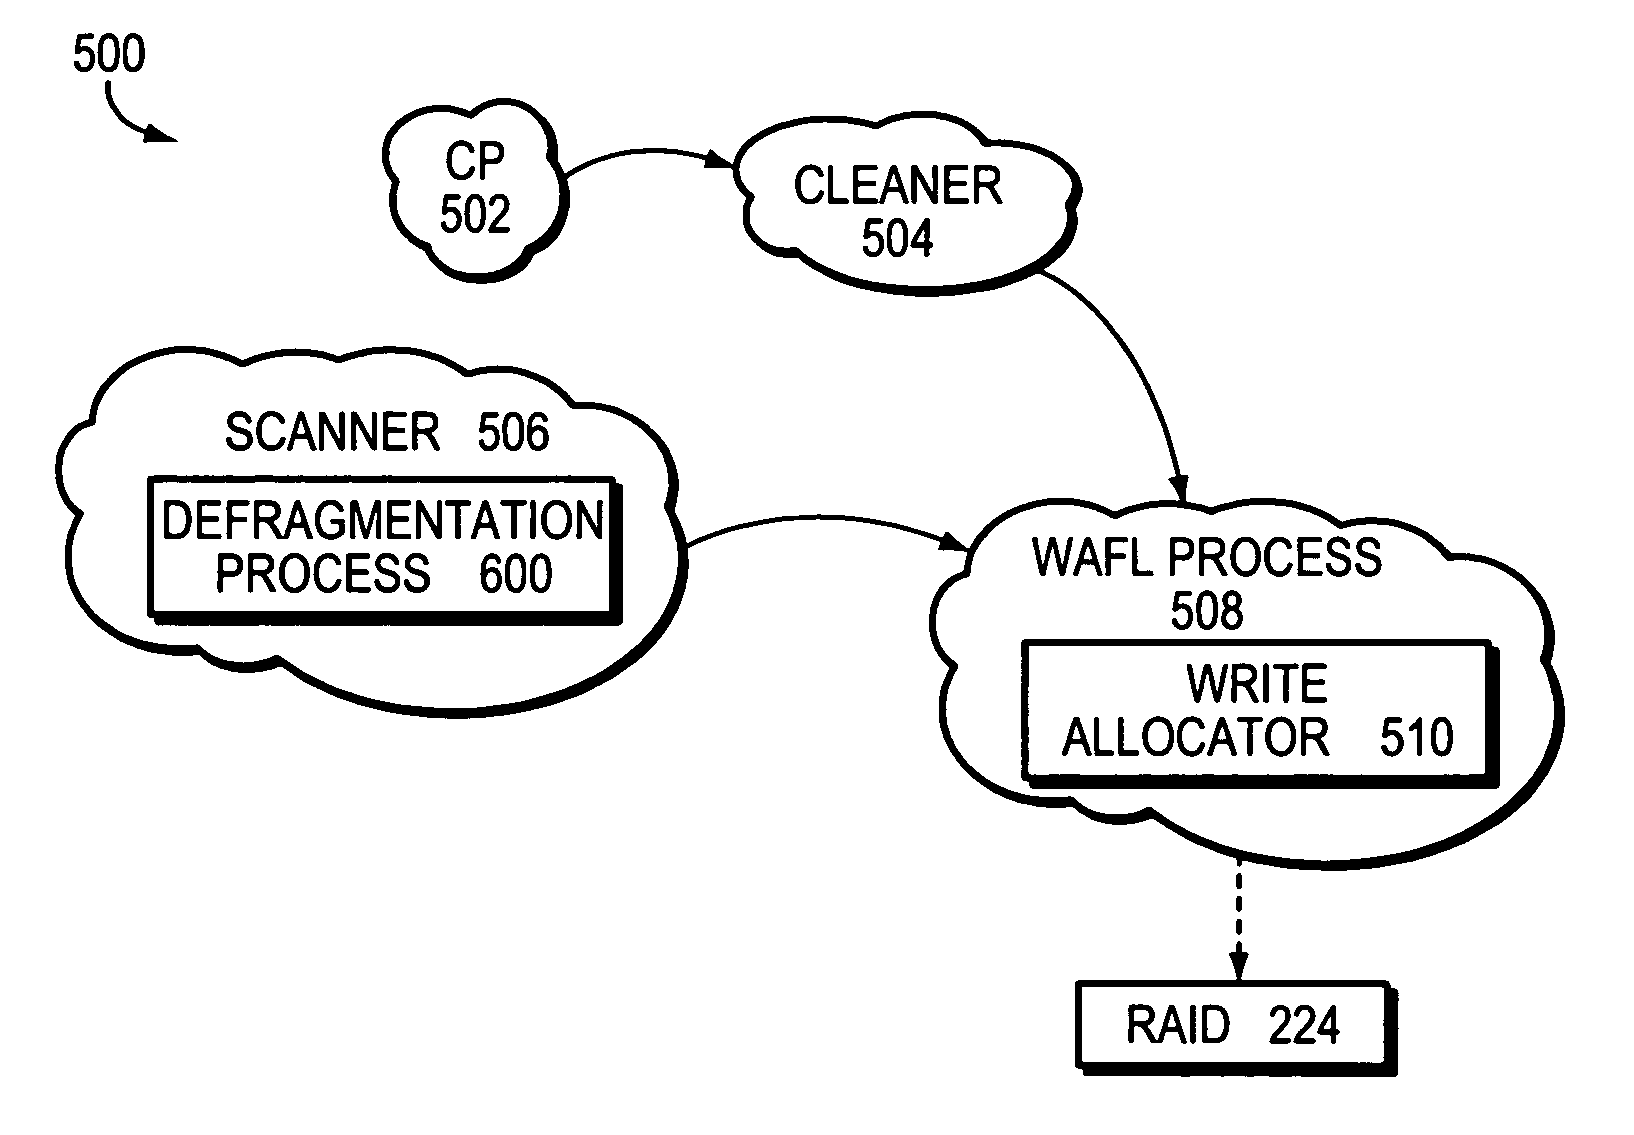 File system defragmentation technique via write allocation